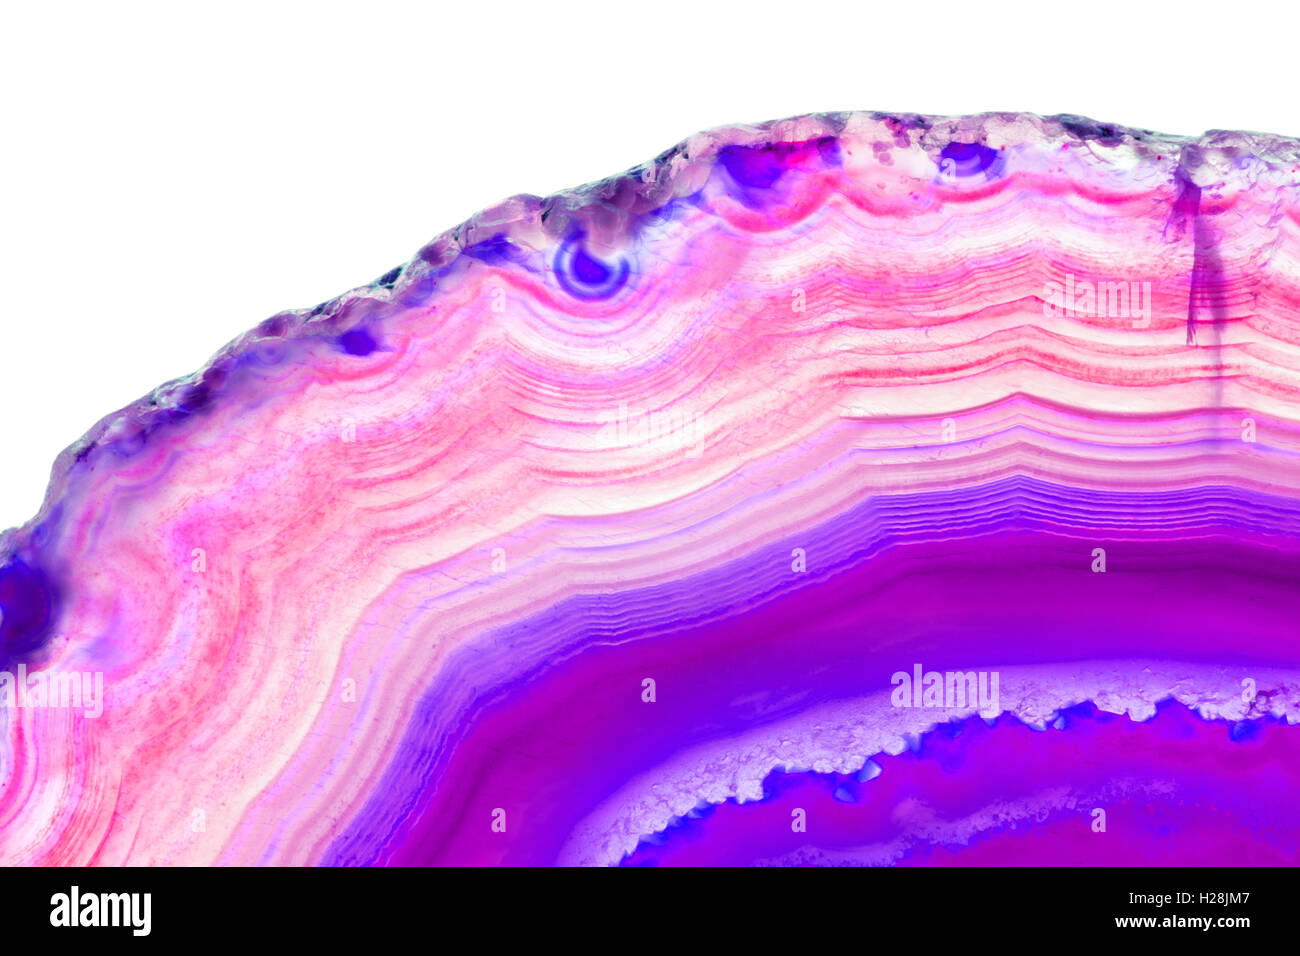 Zusammenfassung Hintergrund - rosa Achat Scheibe mineral Stockfoto